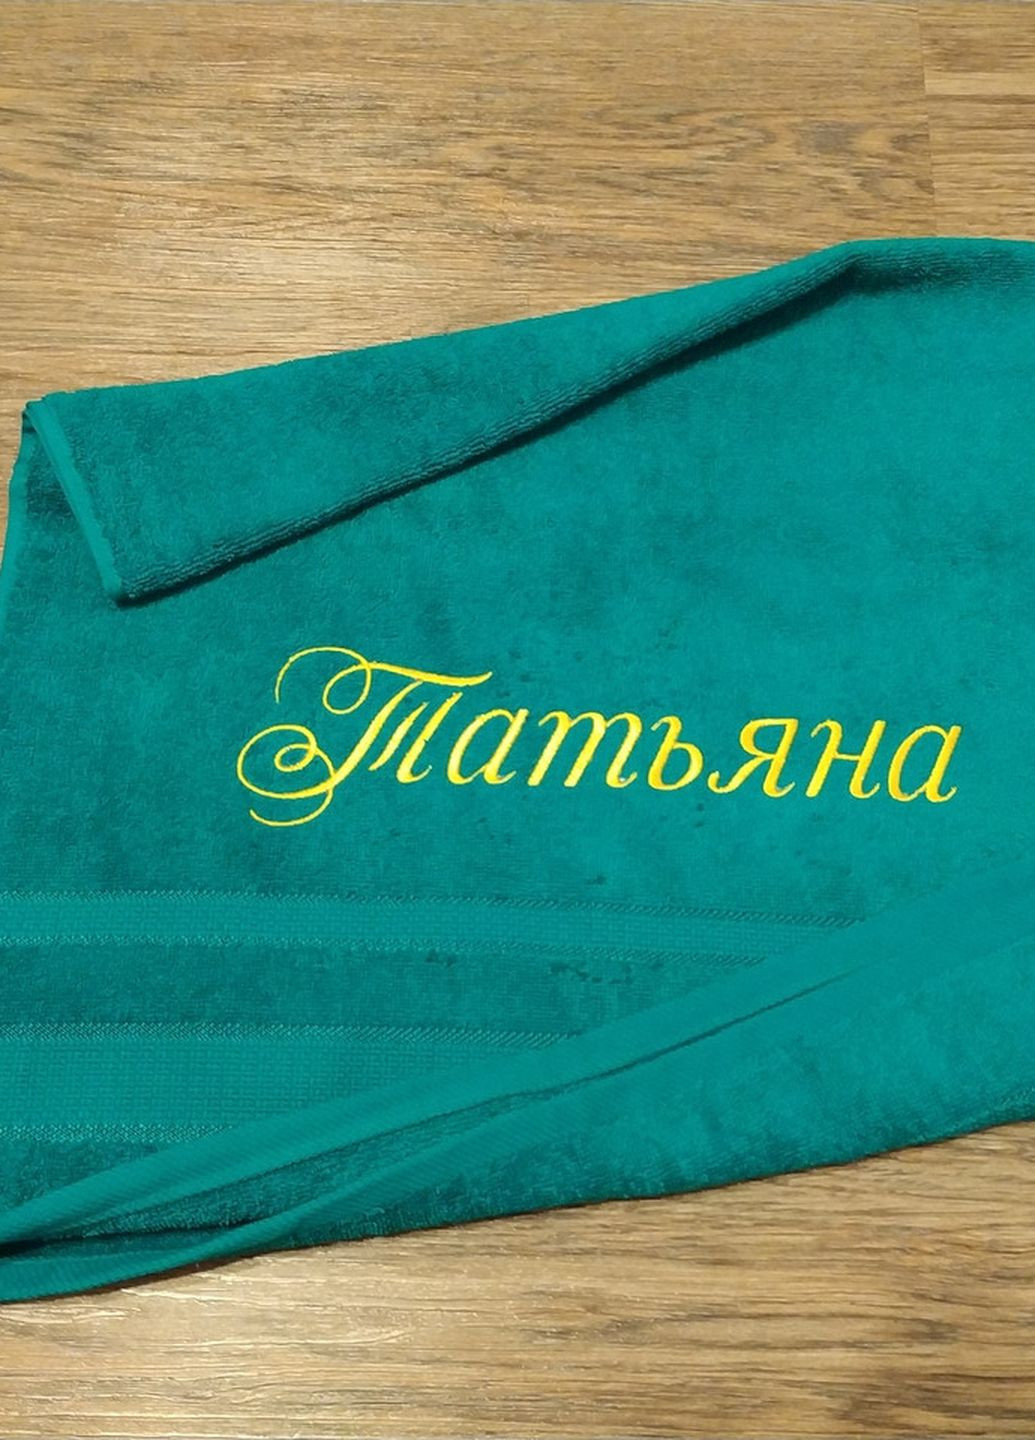 No Brand полотенце с именной вышивкой махровое лицевое 50*90 бирюзовый татьяна 03767 однотонный бирюзовый производство - Украина